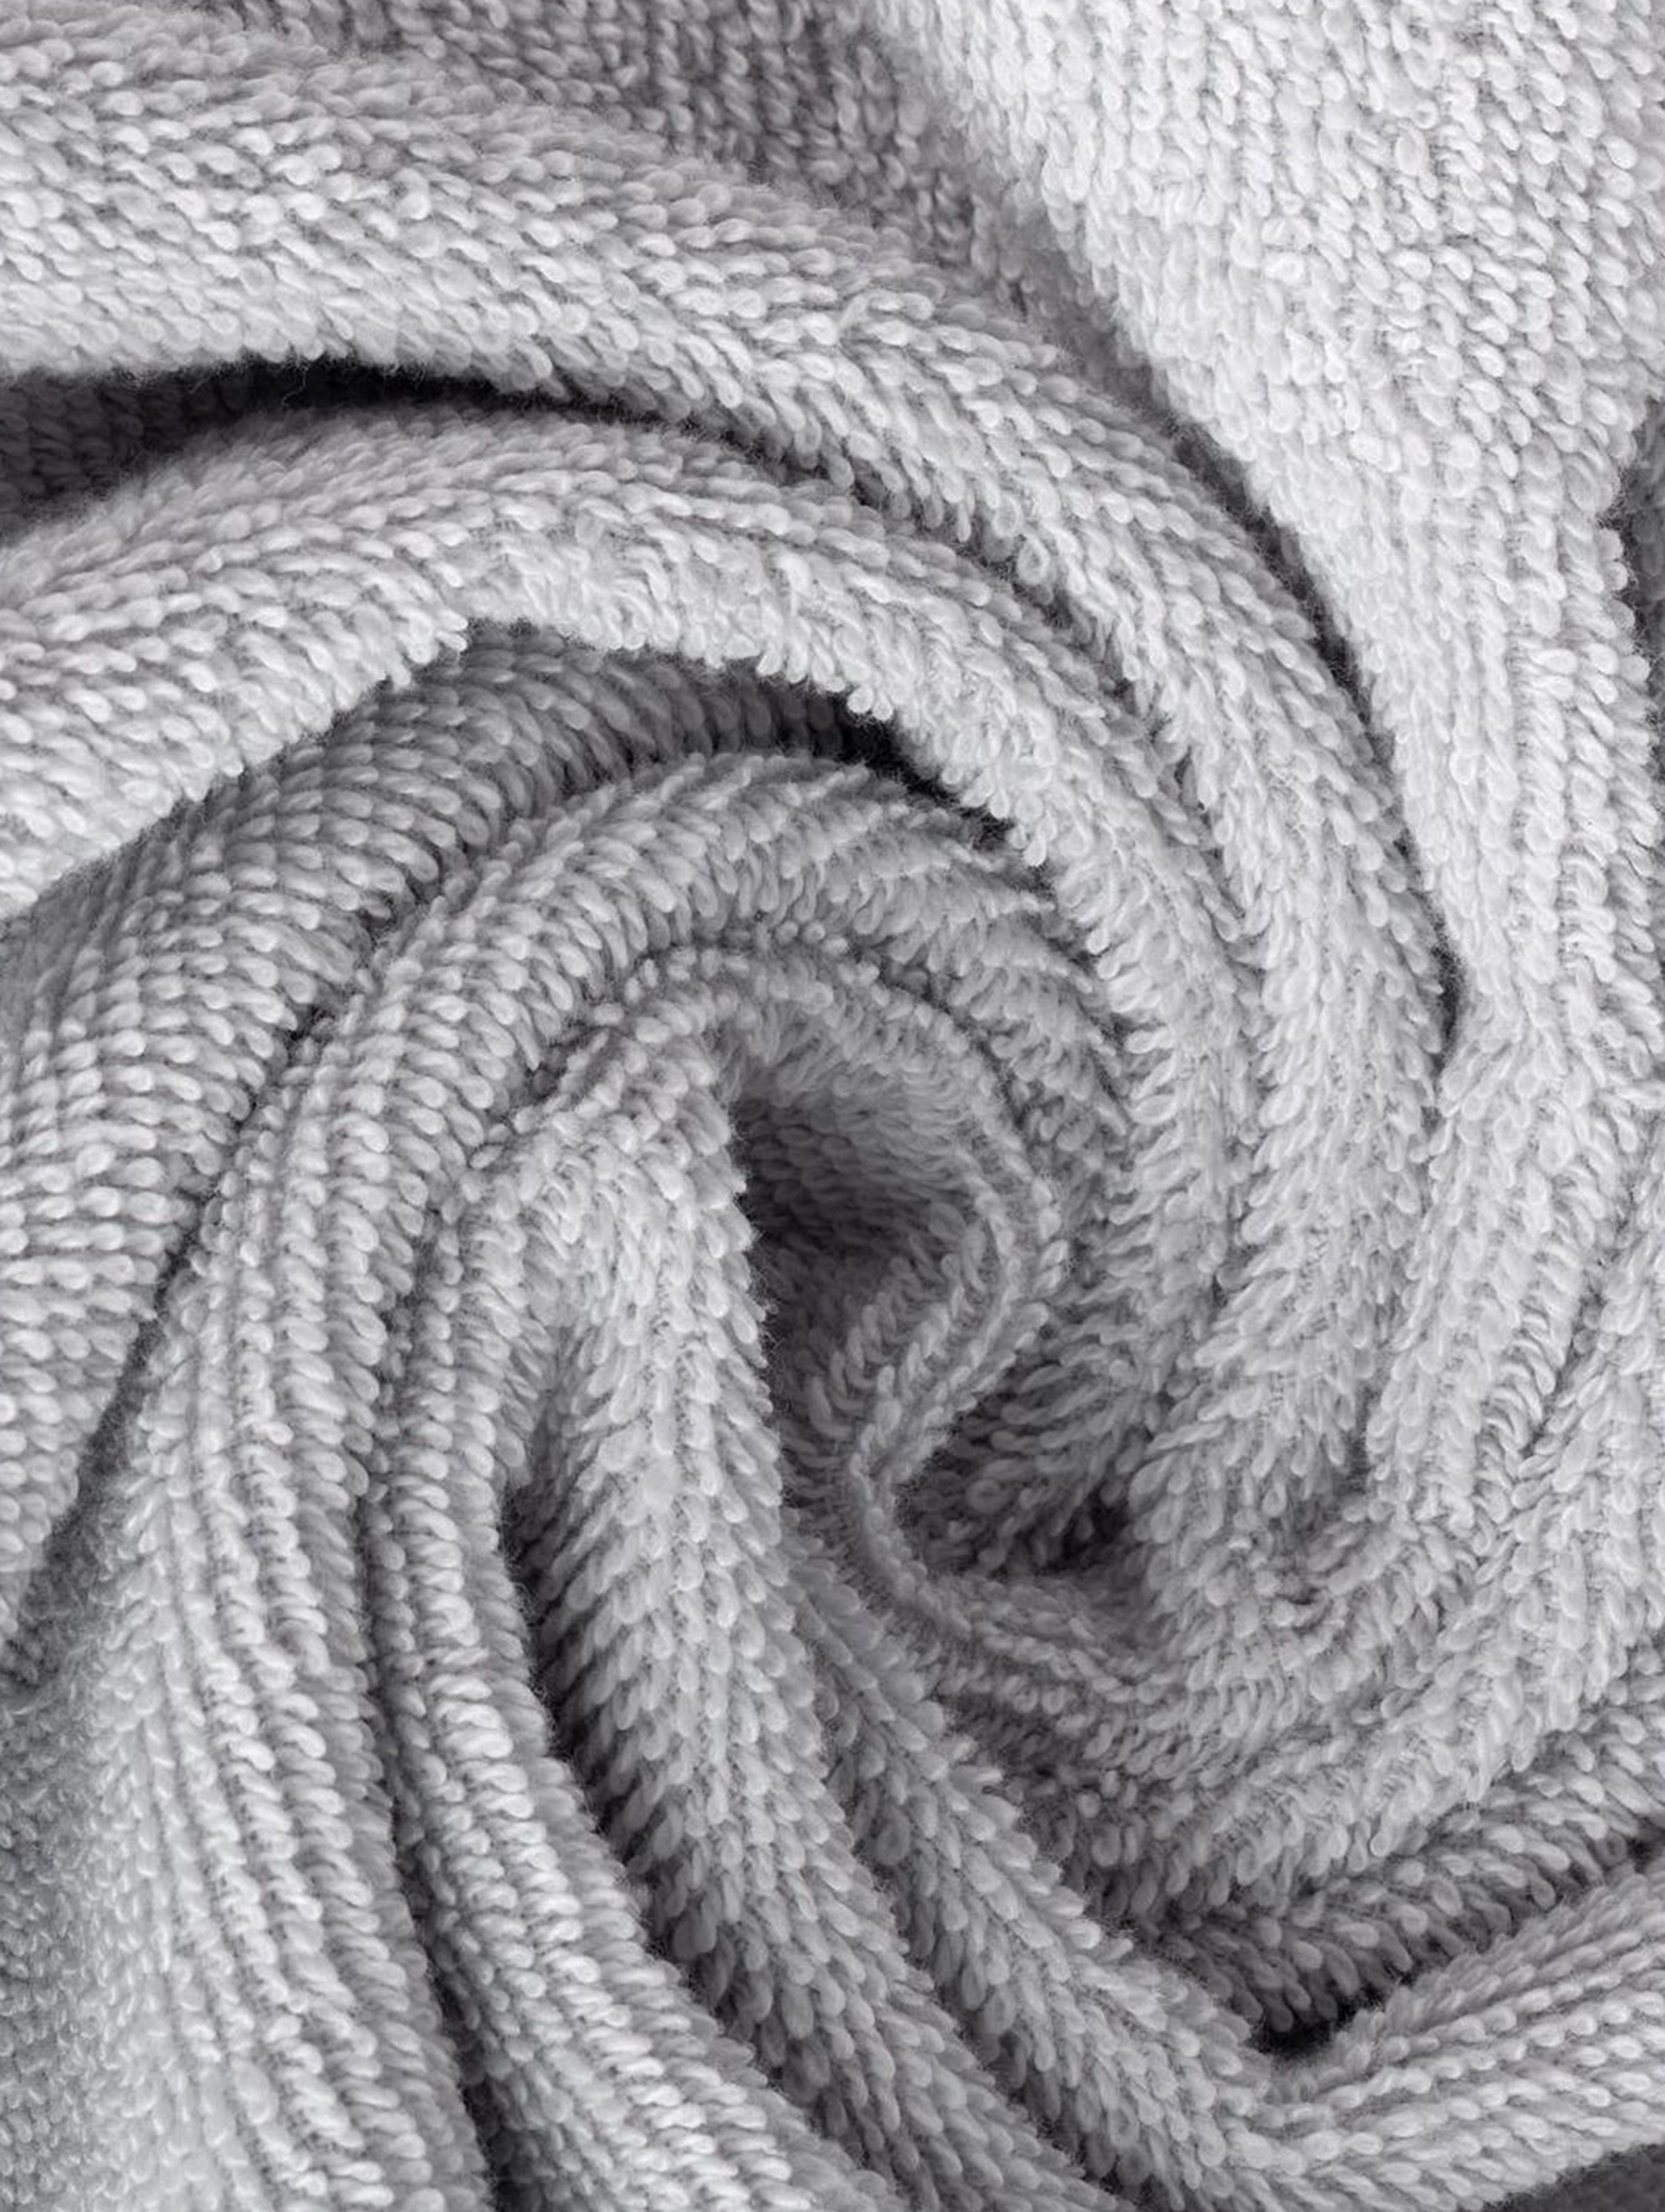 Ręcznik kąpielowy Amanda - szary - 70x140 cm